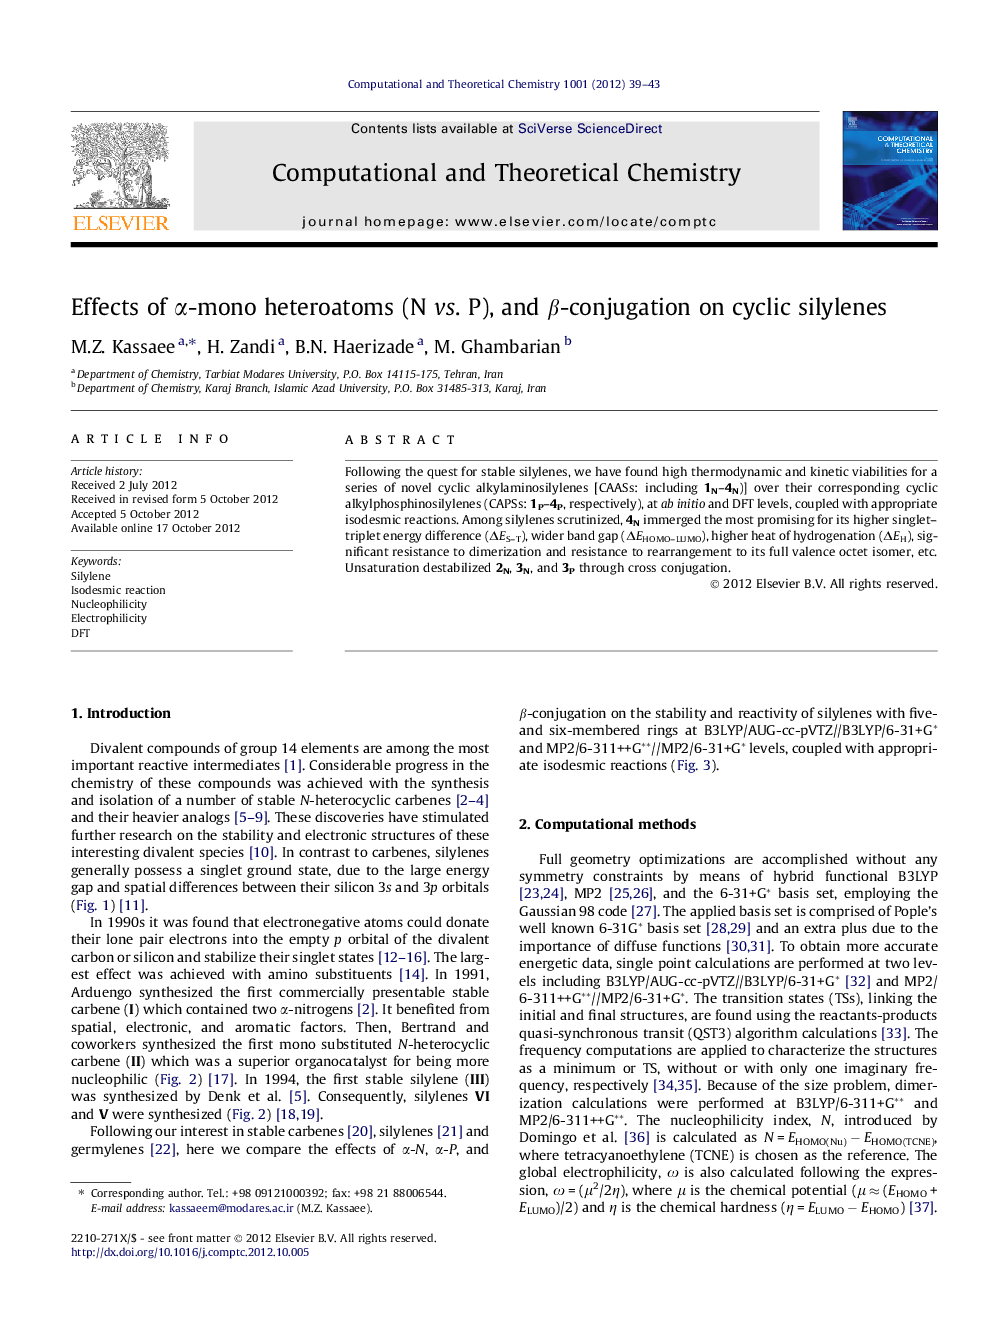 Effects of Î±-mono heteroatoms (N vs. P), and Î²-conjugation on cyclic silylenes